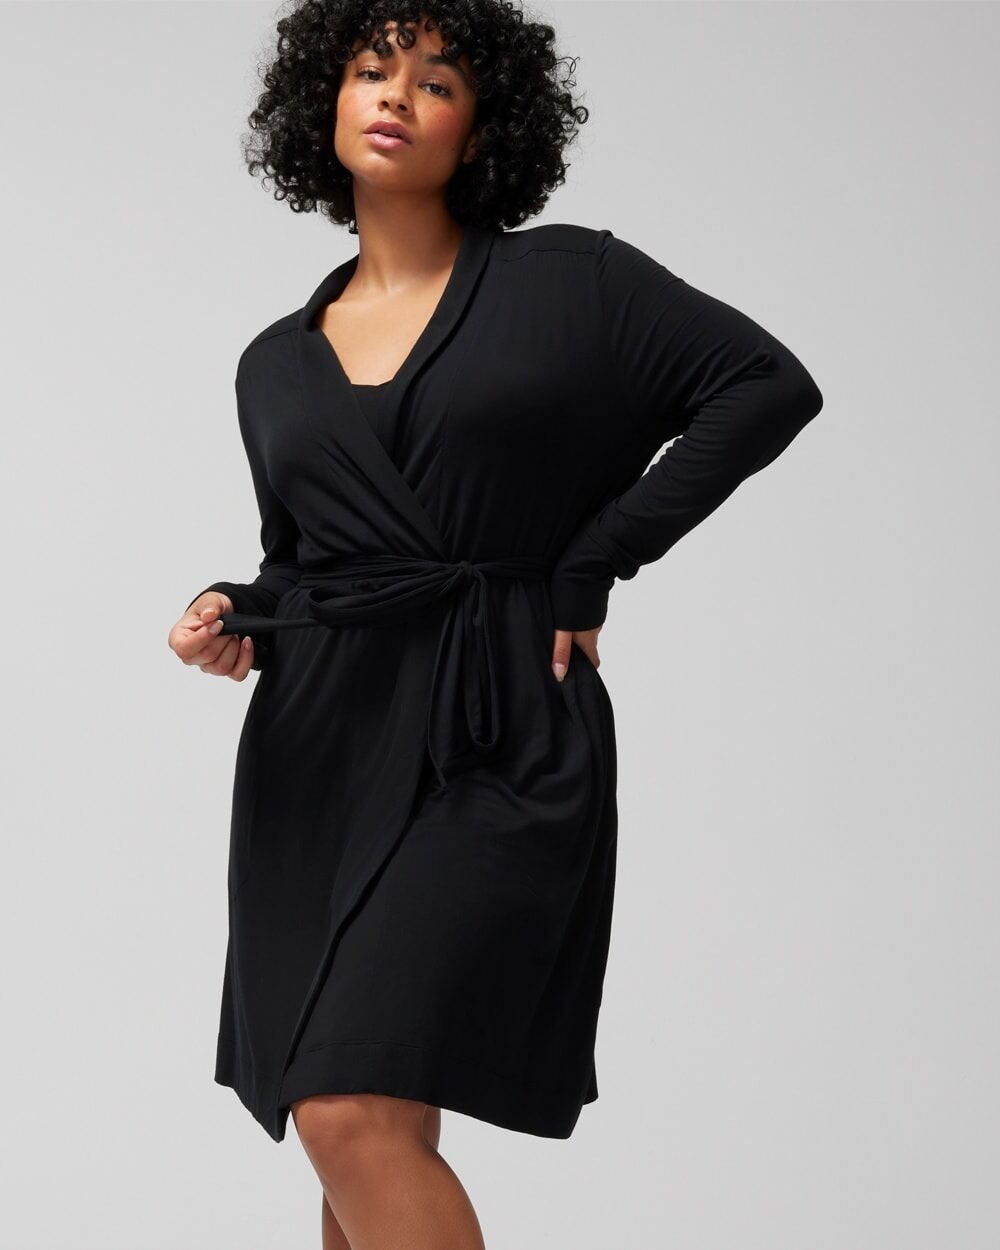 Women's Cool Nights Short Robe in Black size Large/XL   Soma - Women - Black - Large/XL